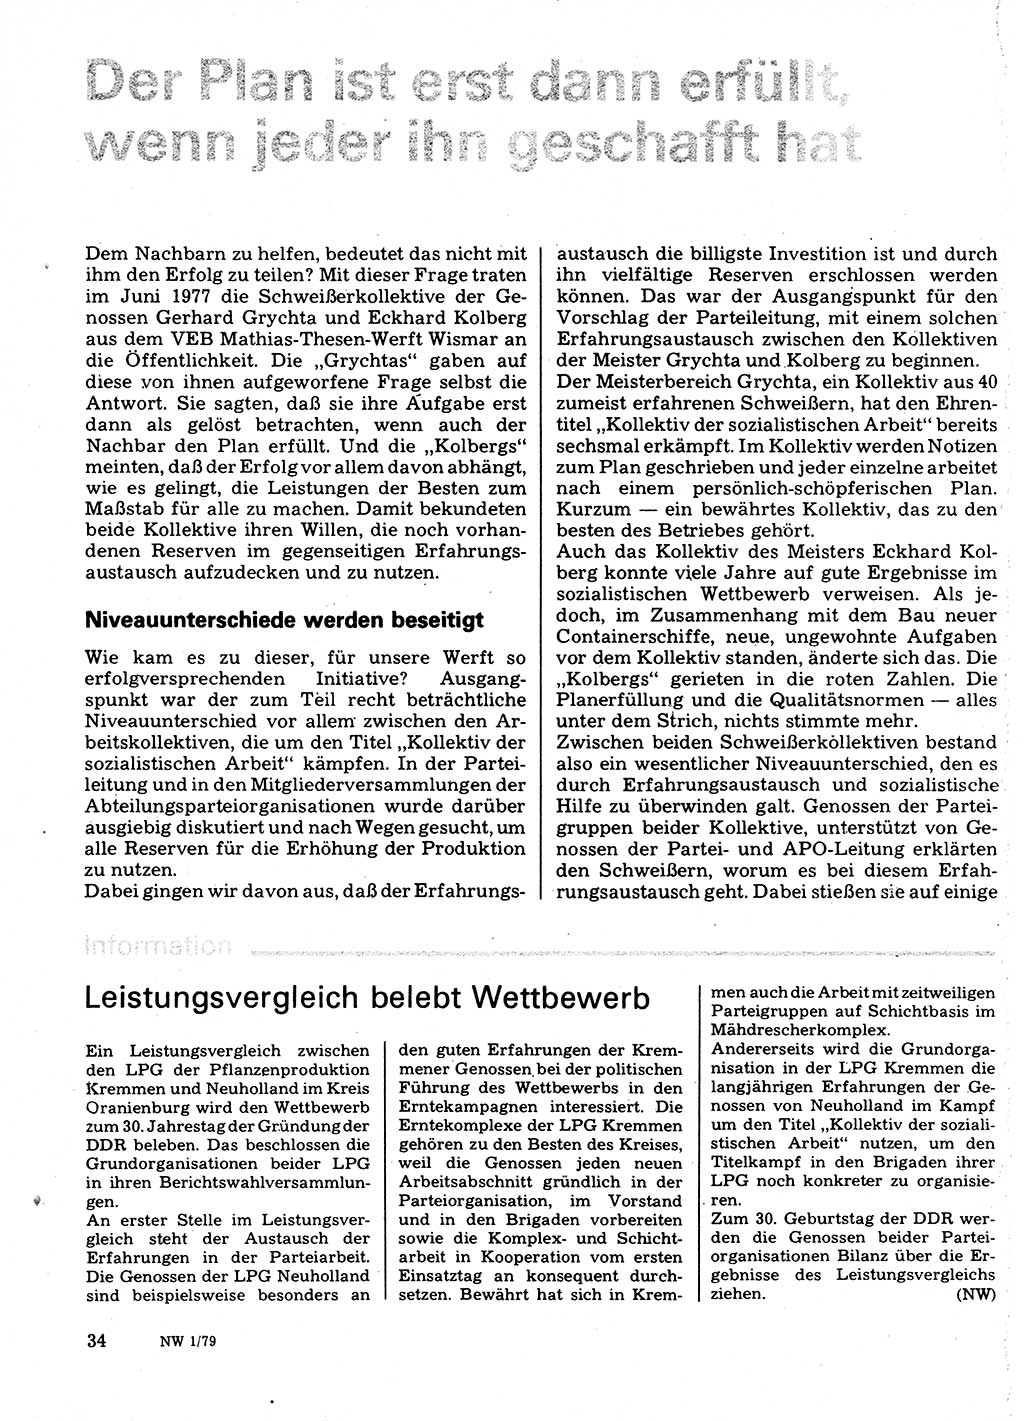 Neuer Weg (NW), Organ des Zentralkomitees (ZK) der SED (Sozialistische Einheitspartei Deutschlands) für Fragen des Parteilebens, 34. Jahrgang [Deutsche Demokratische Republik (DDR)] 1979, Seite 34 (NW ZK SED DDR 1979, S. 34)